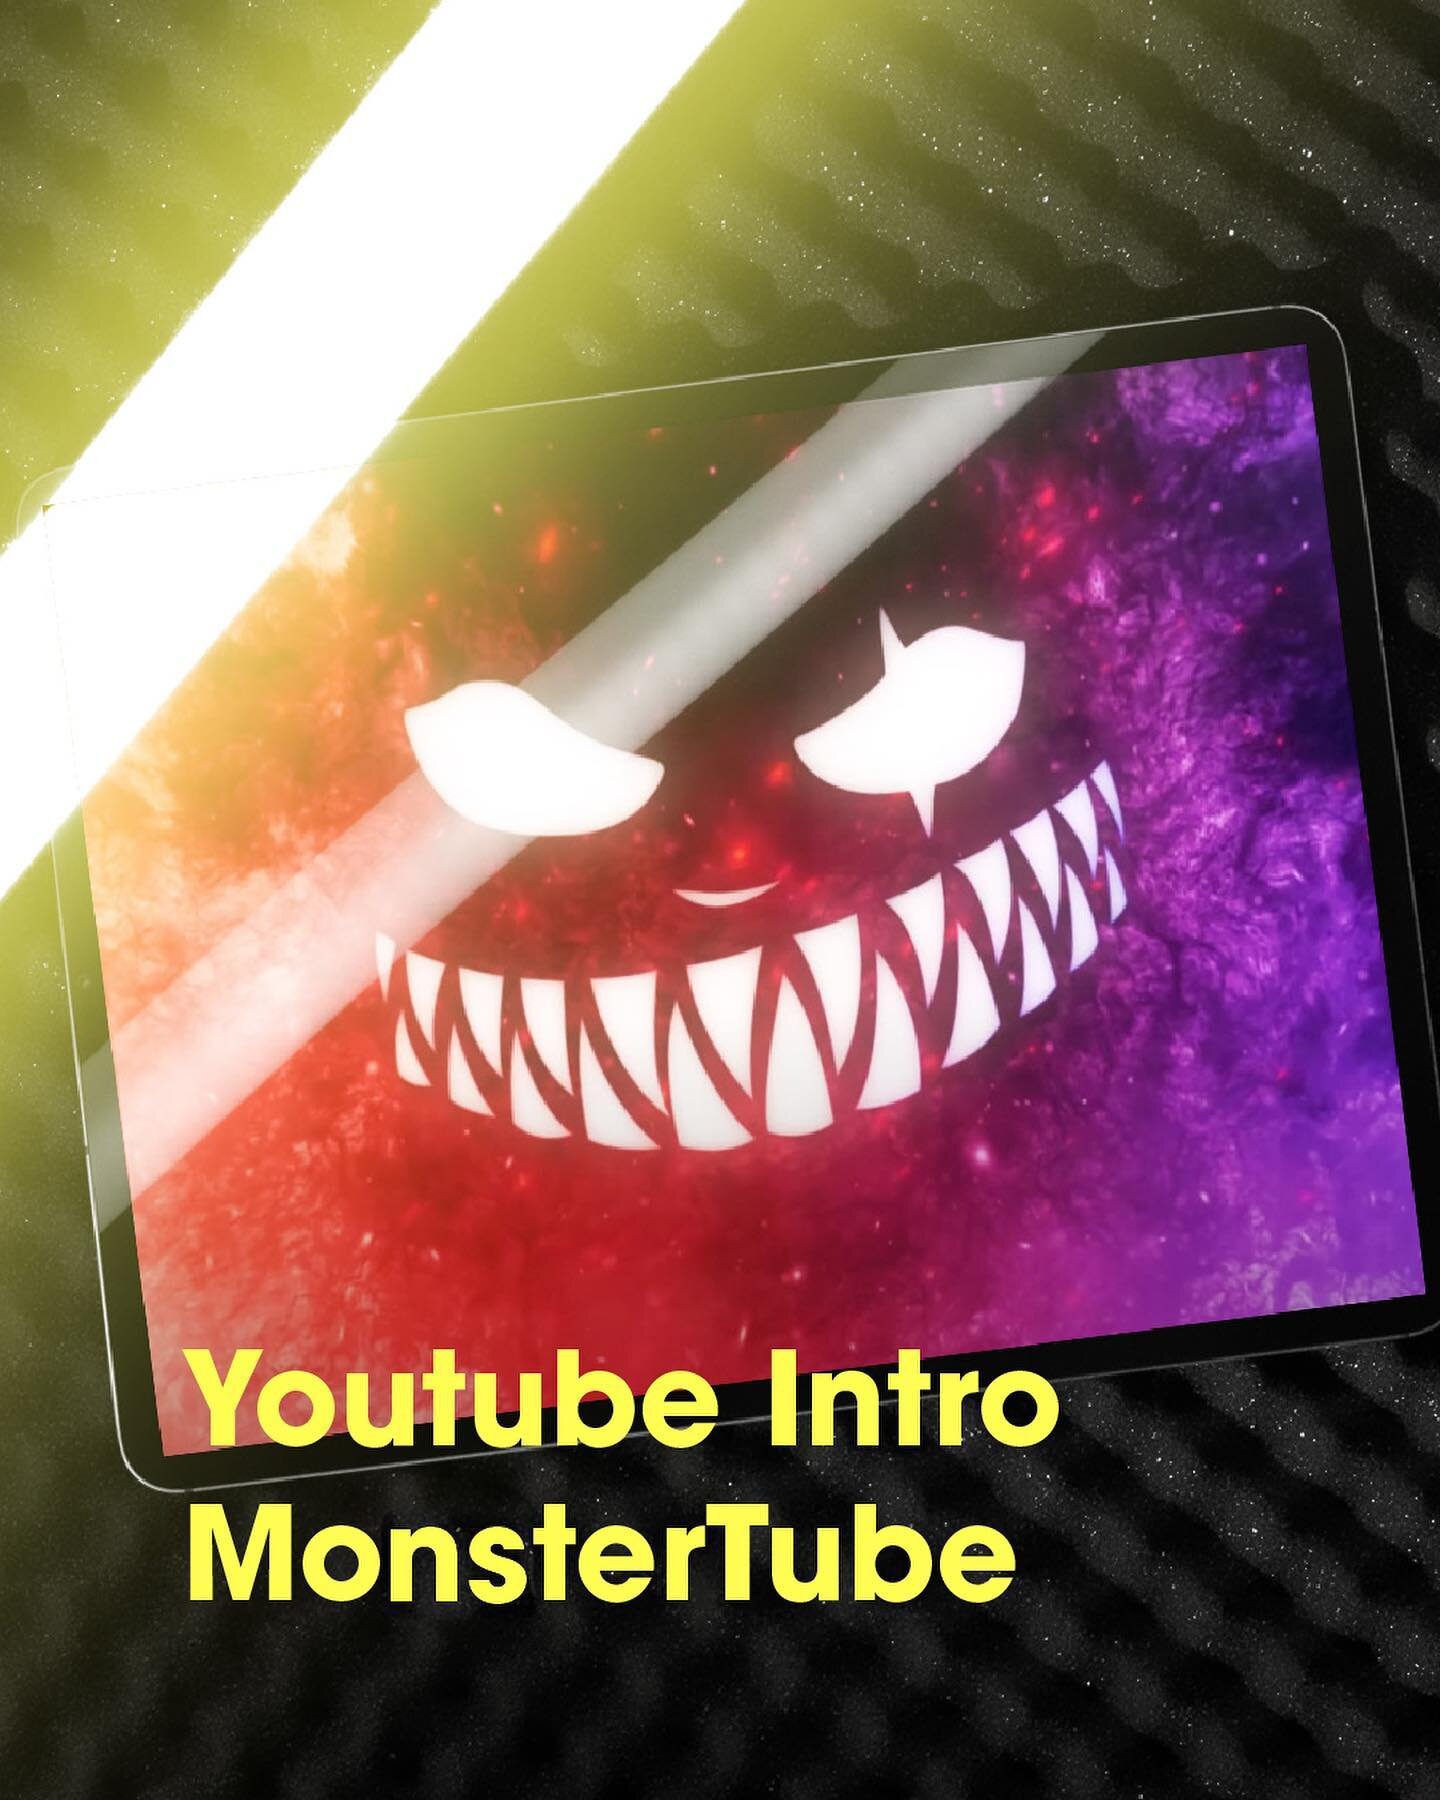 De monsters zijn losgelaten op het YouTube kanaal van MonsterTube!👀🔥 @monstertube_ 

We hebben de gloednieuwe intro-animatie ontwikkelt waar bij je elke video een krachtige en positieve start krijgt. Bekijk het nu! 🎉

#introanimatie #intro #animat